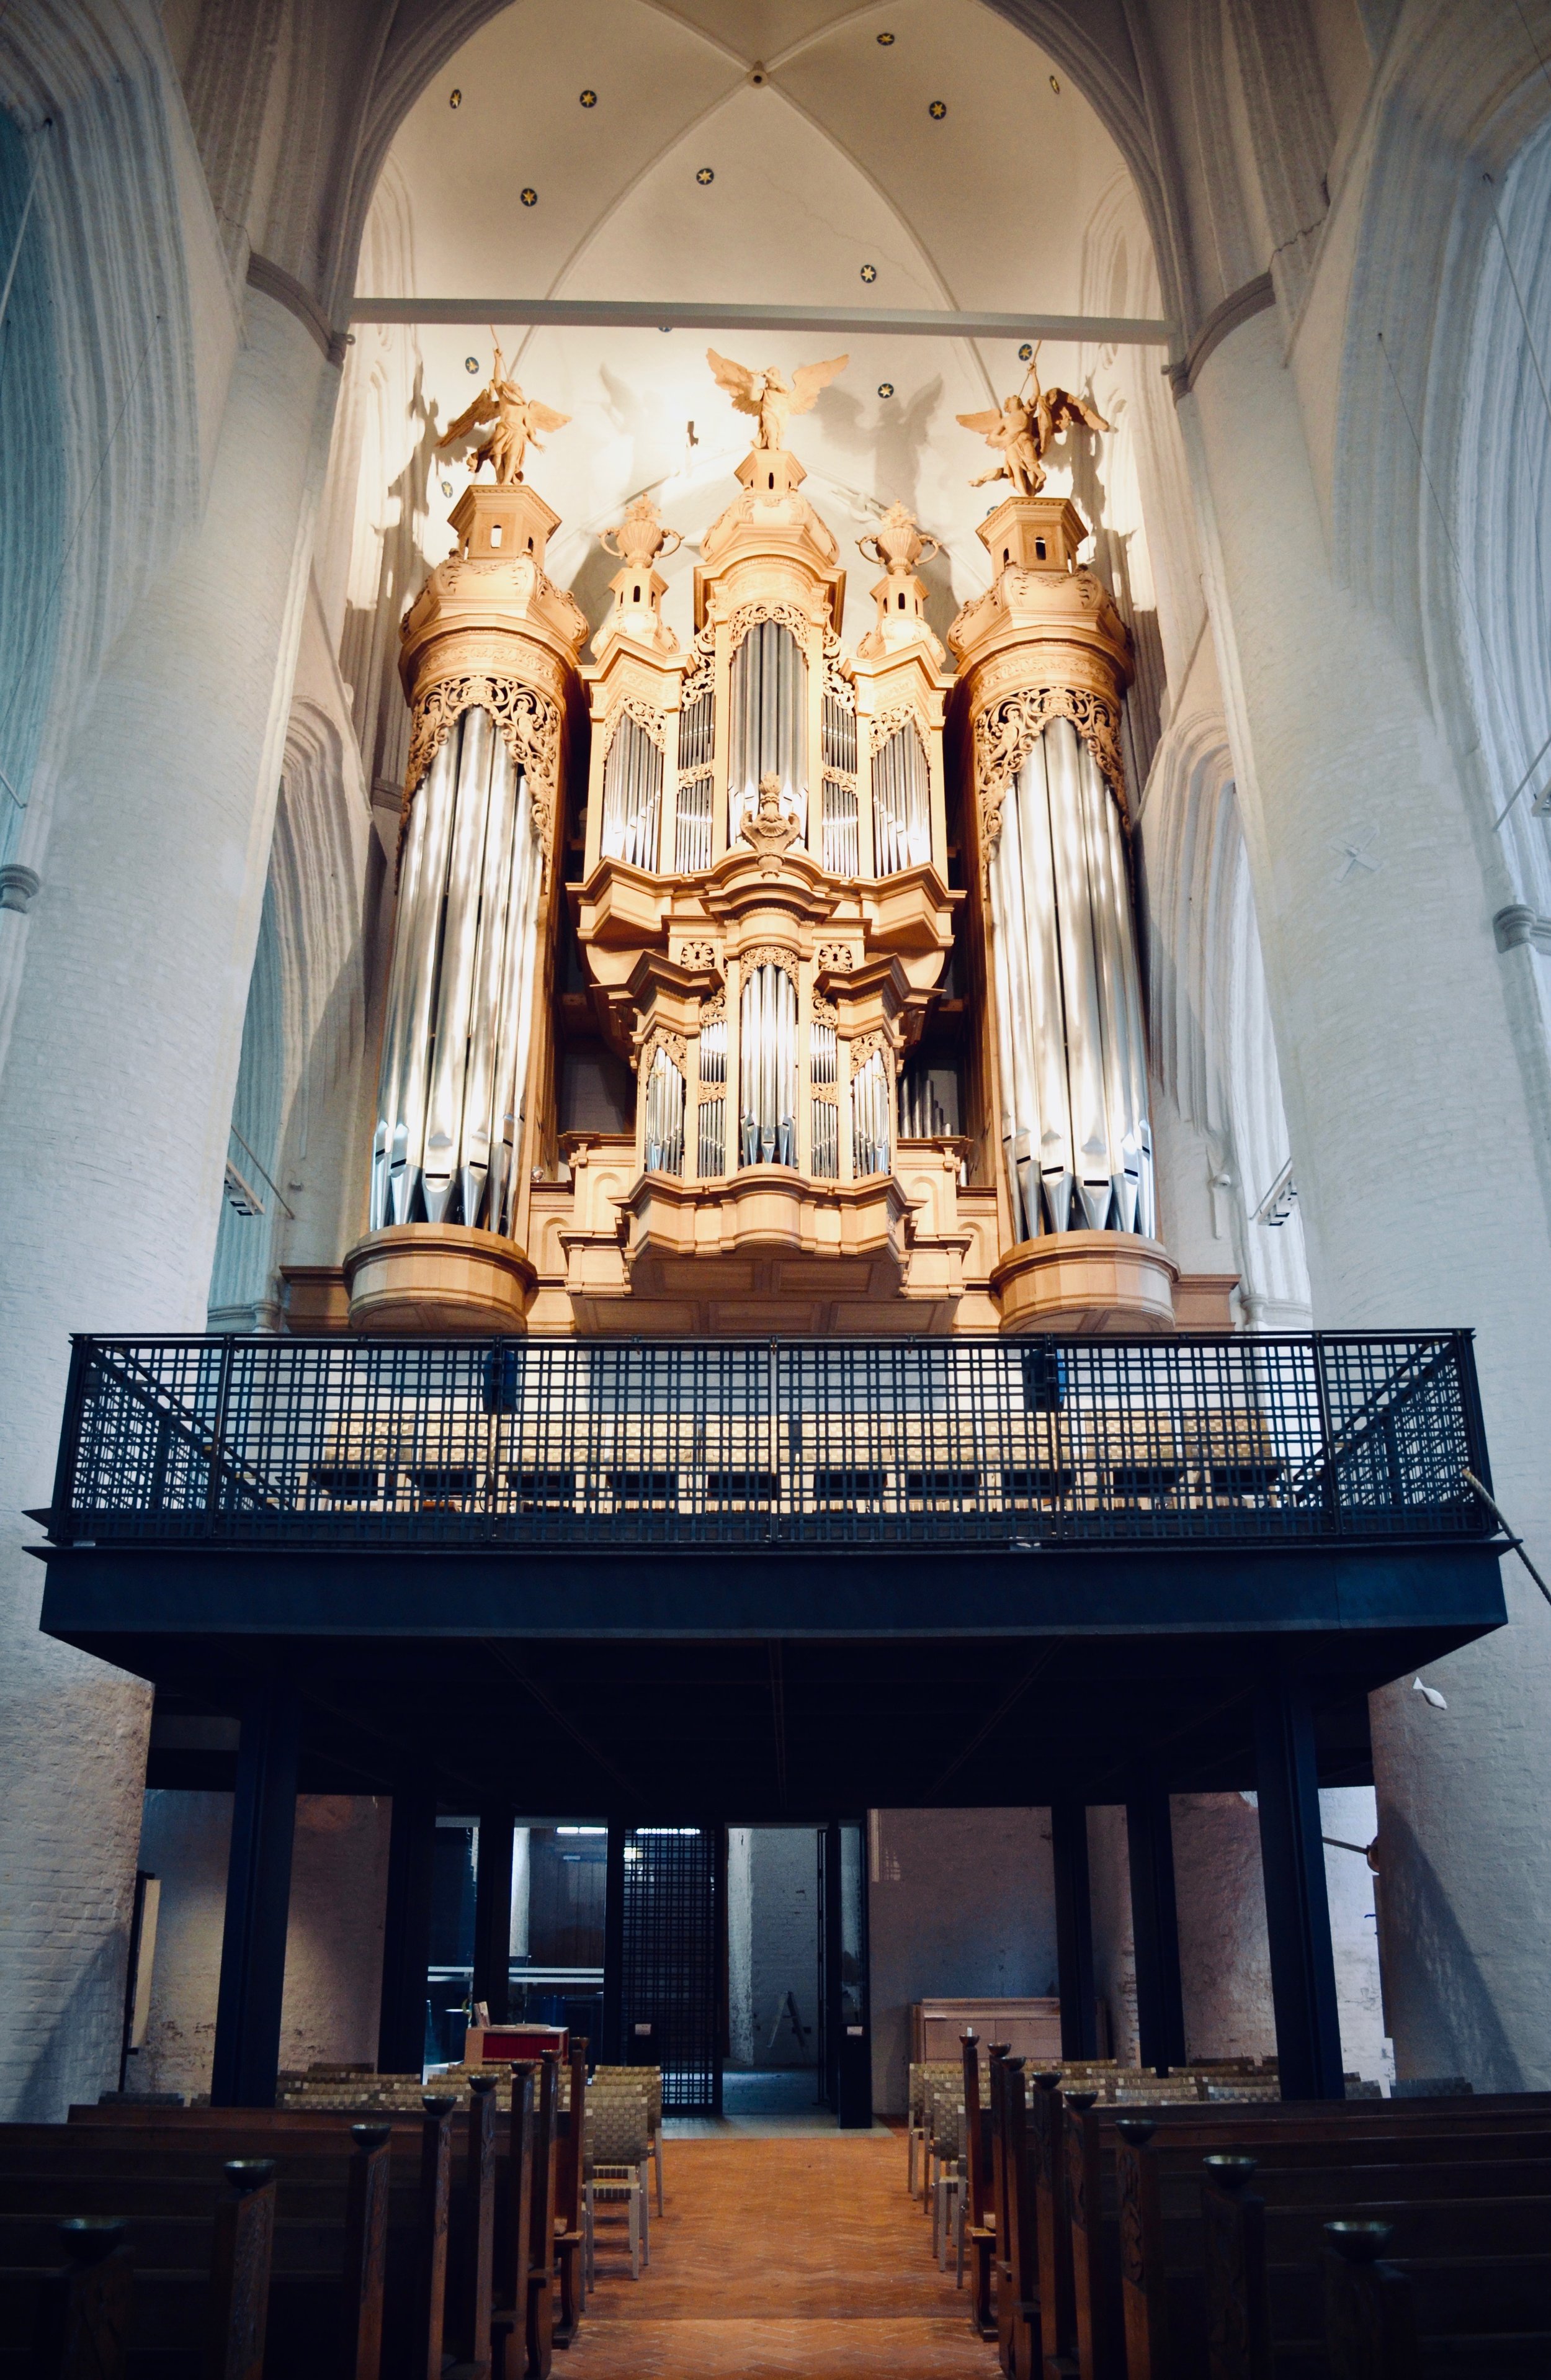  The 2013 Flentrop organ in St. Katharinen, Hamburg. 